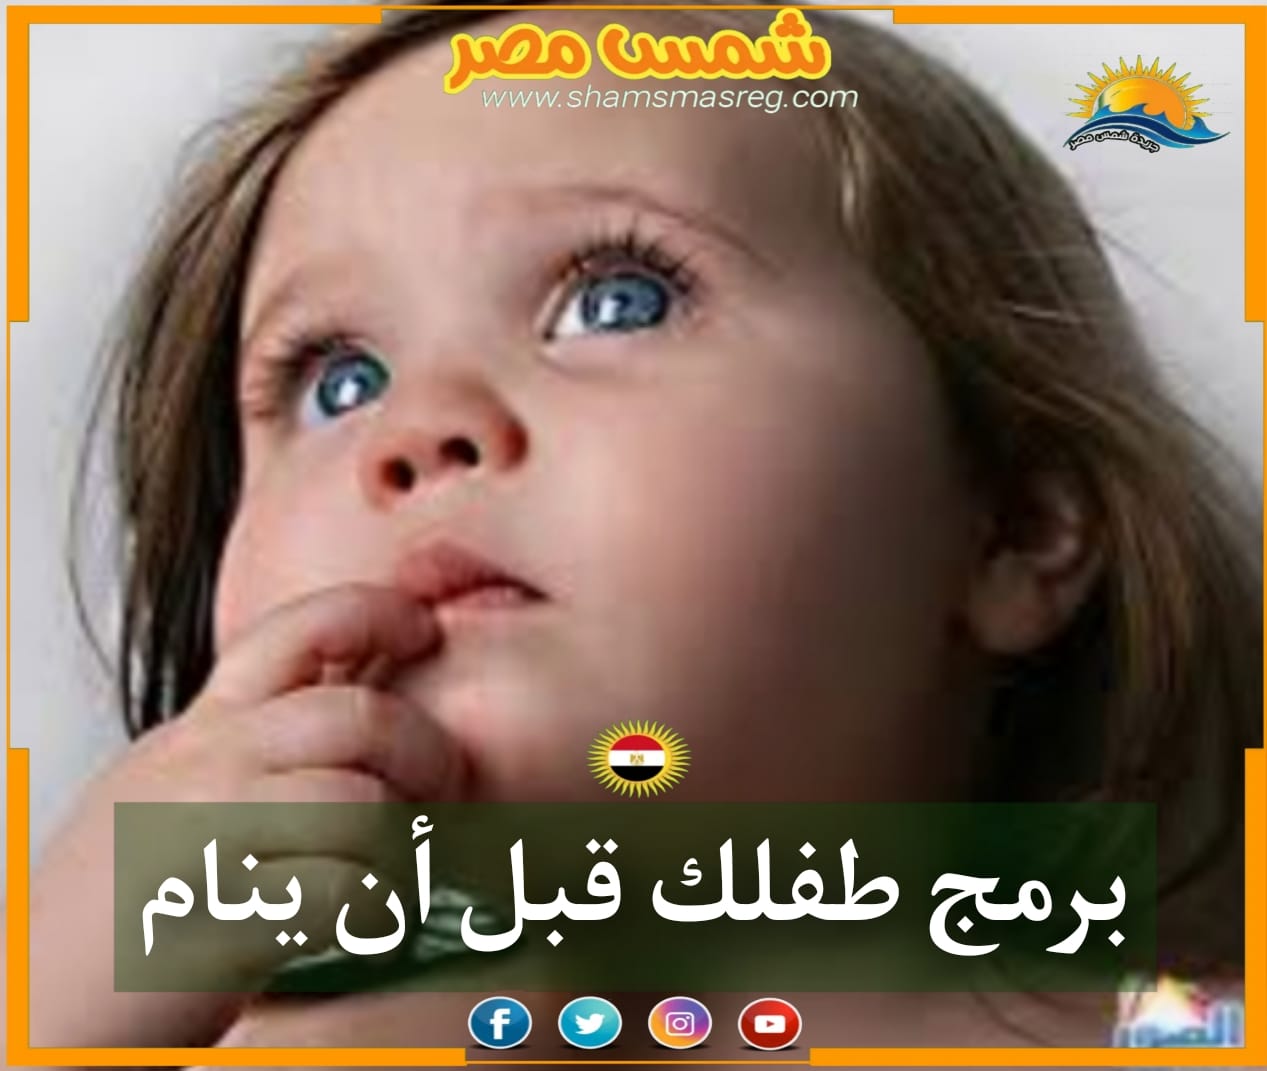 |شمس مصر|.. برمج طفلك قبل أن ينام